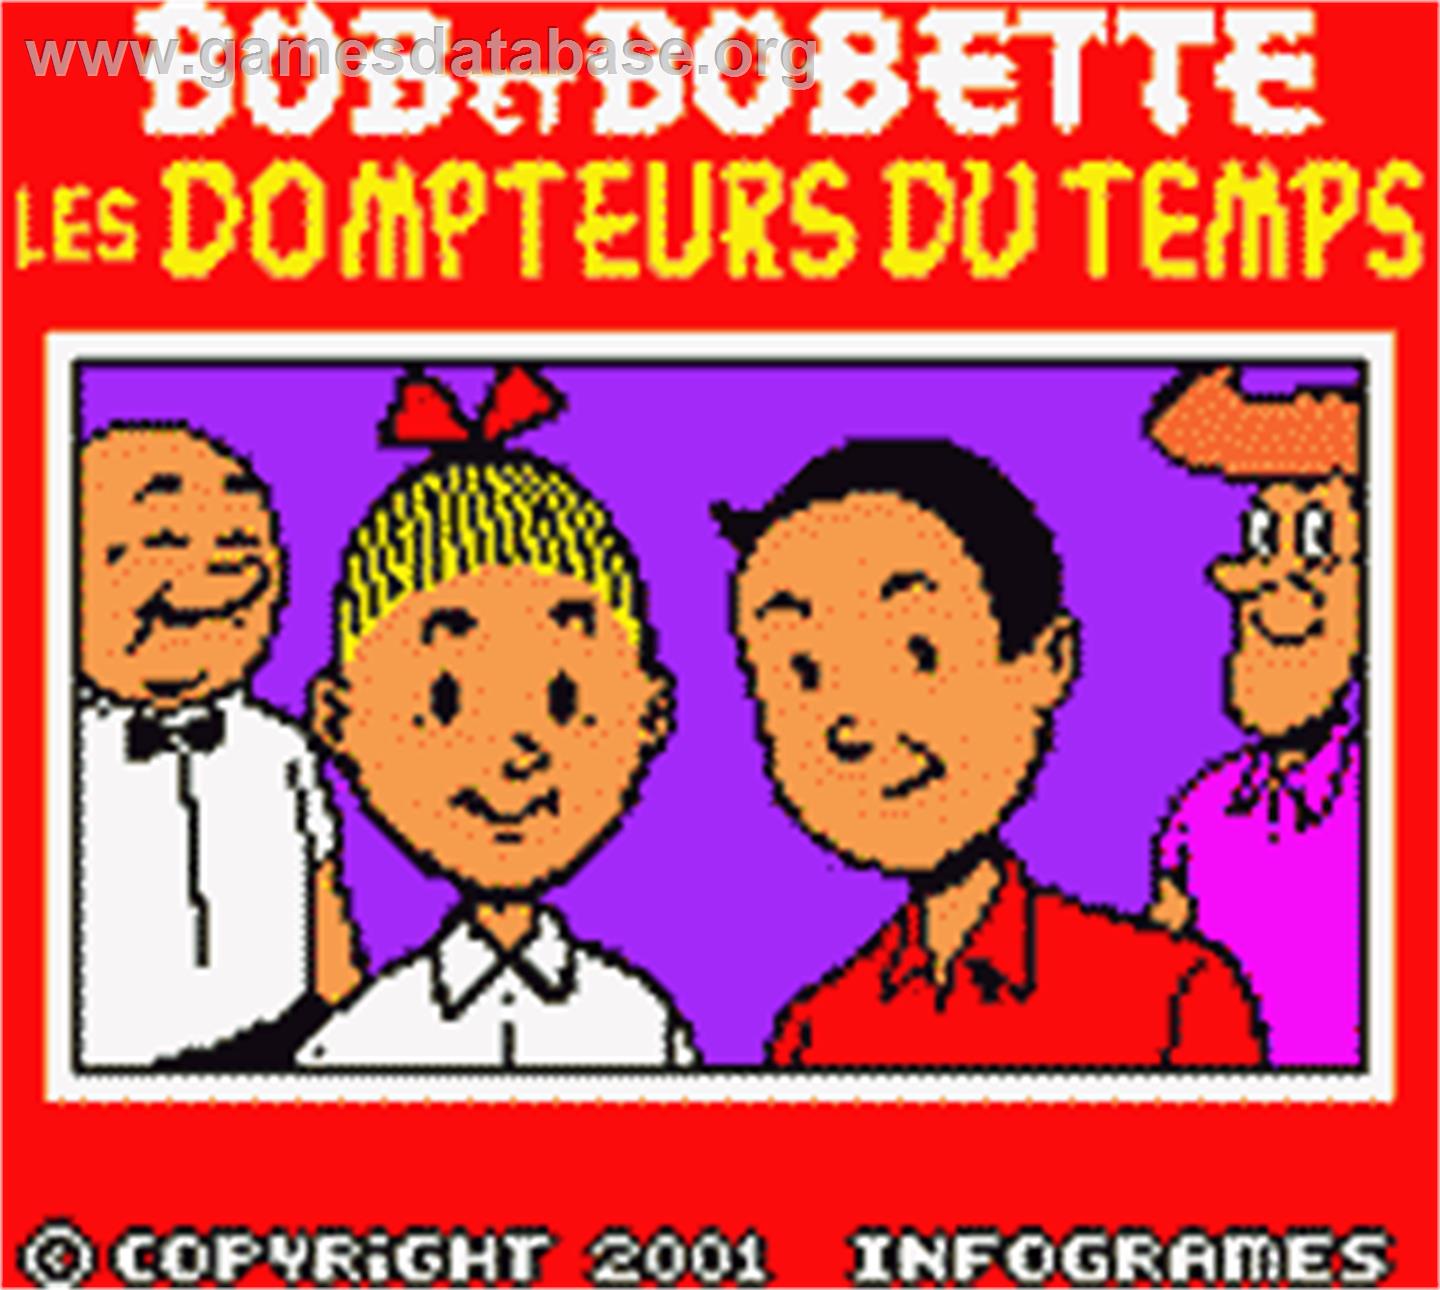 Bob et Bobette: Les Dompteurs du Temps - Nintendo Game Boy Color - Artwork - Title Screen